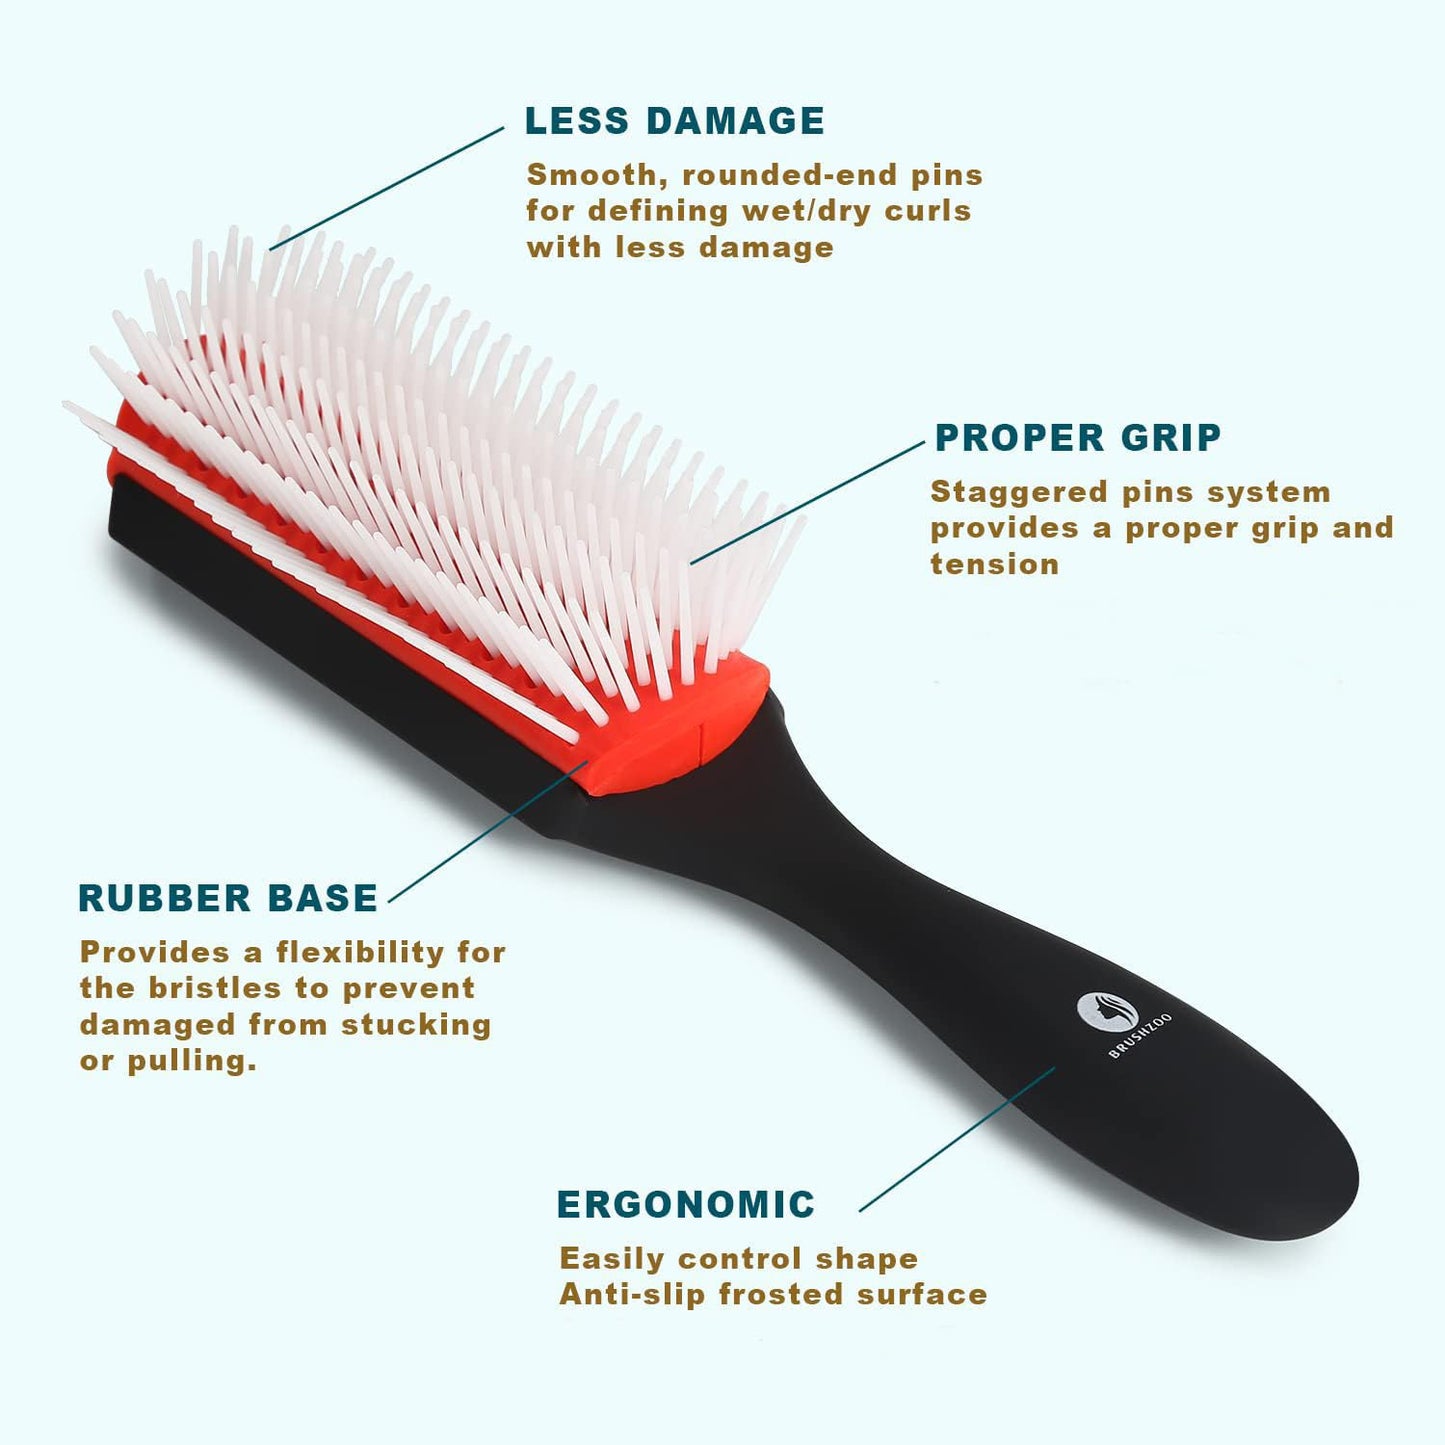 O BRUSHZOO Detangler Hair Brush for Curly Hair, Detangling Brush for Wet Dry Thick Wavy Hair, Curly Hair Brushes for Women Men Kids Styling Defining